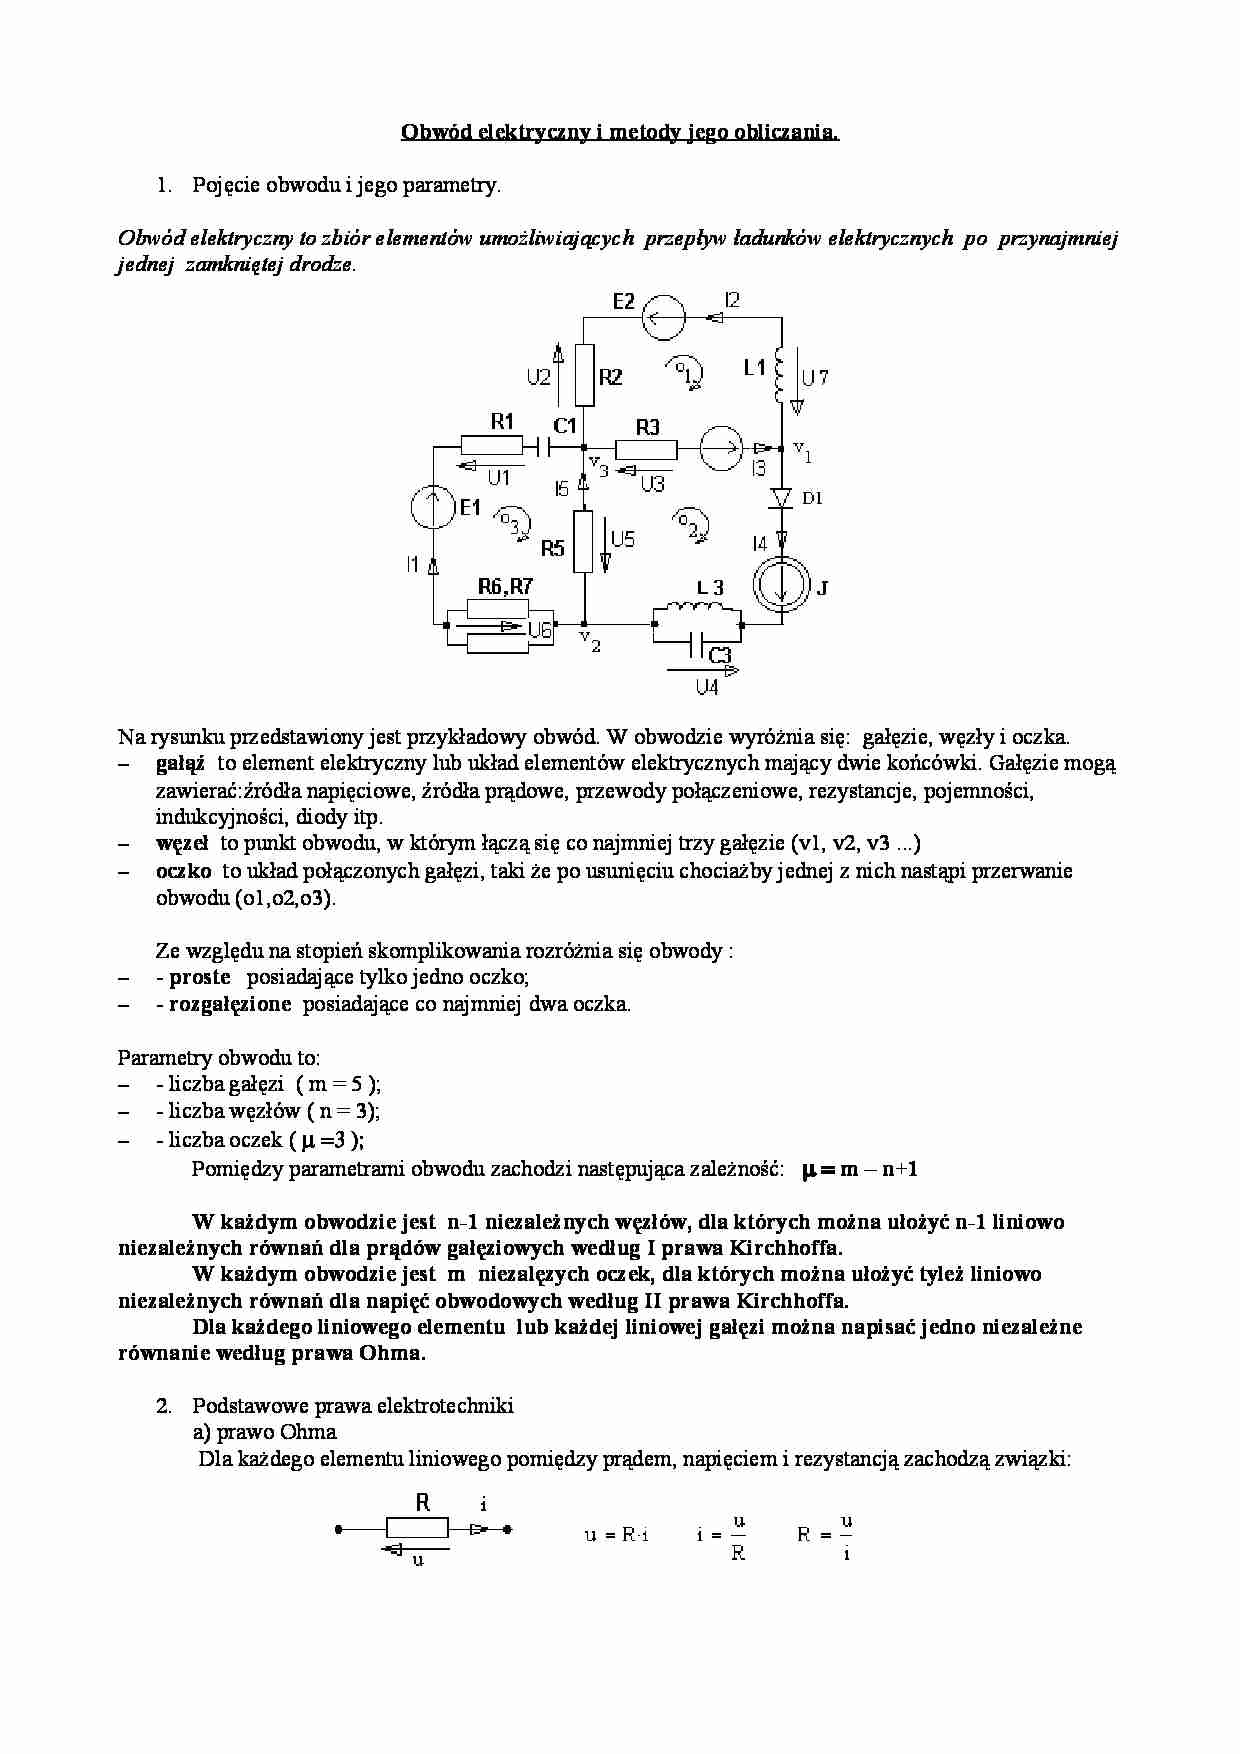 Obwód elektryczny i metody jego obliczania - wykład - strona 1